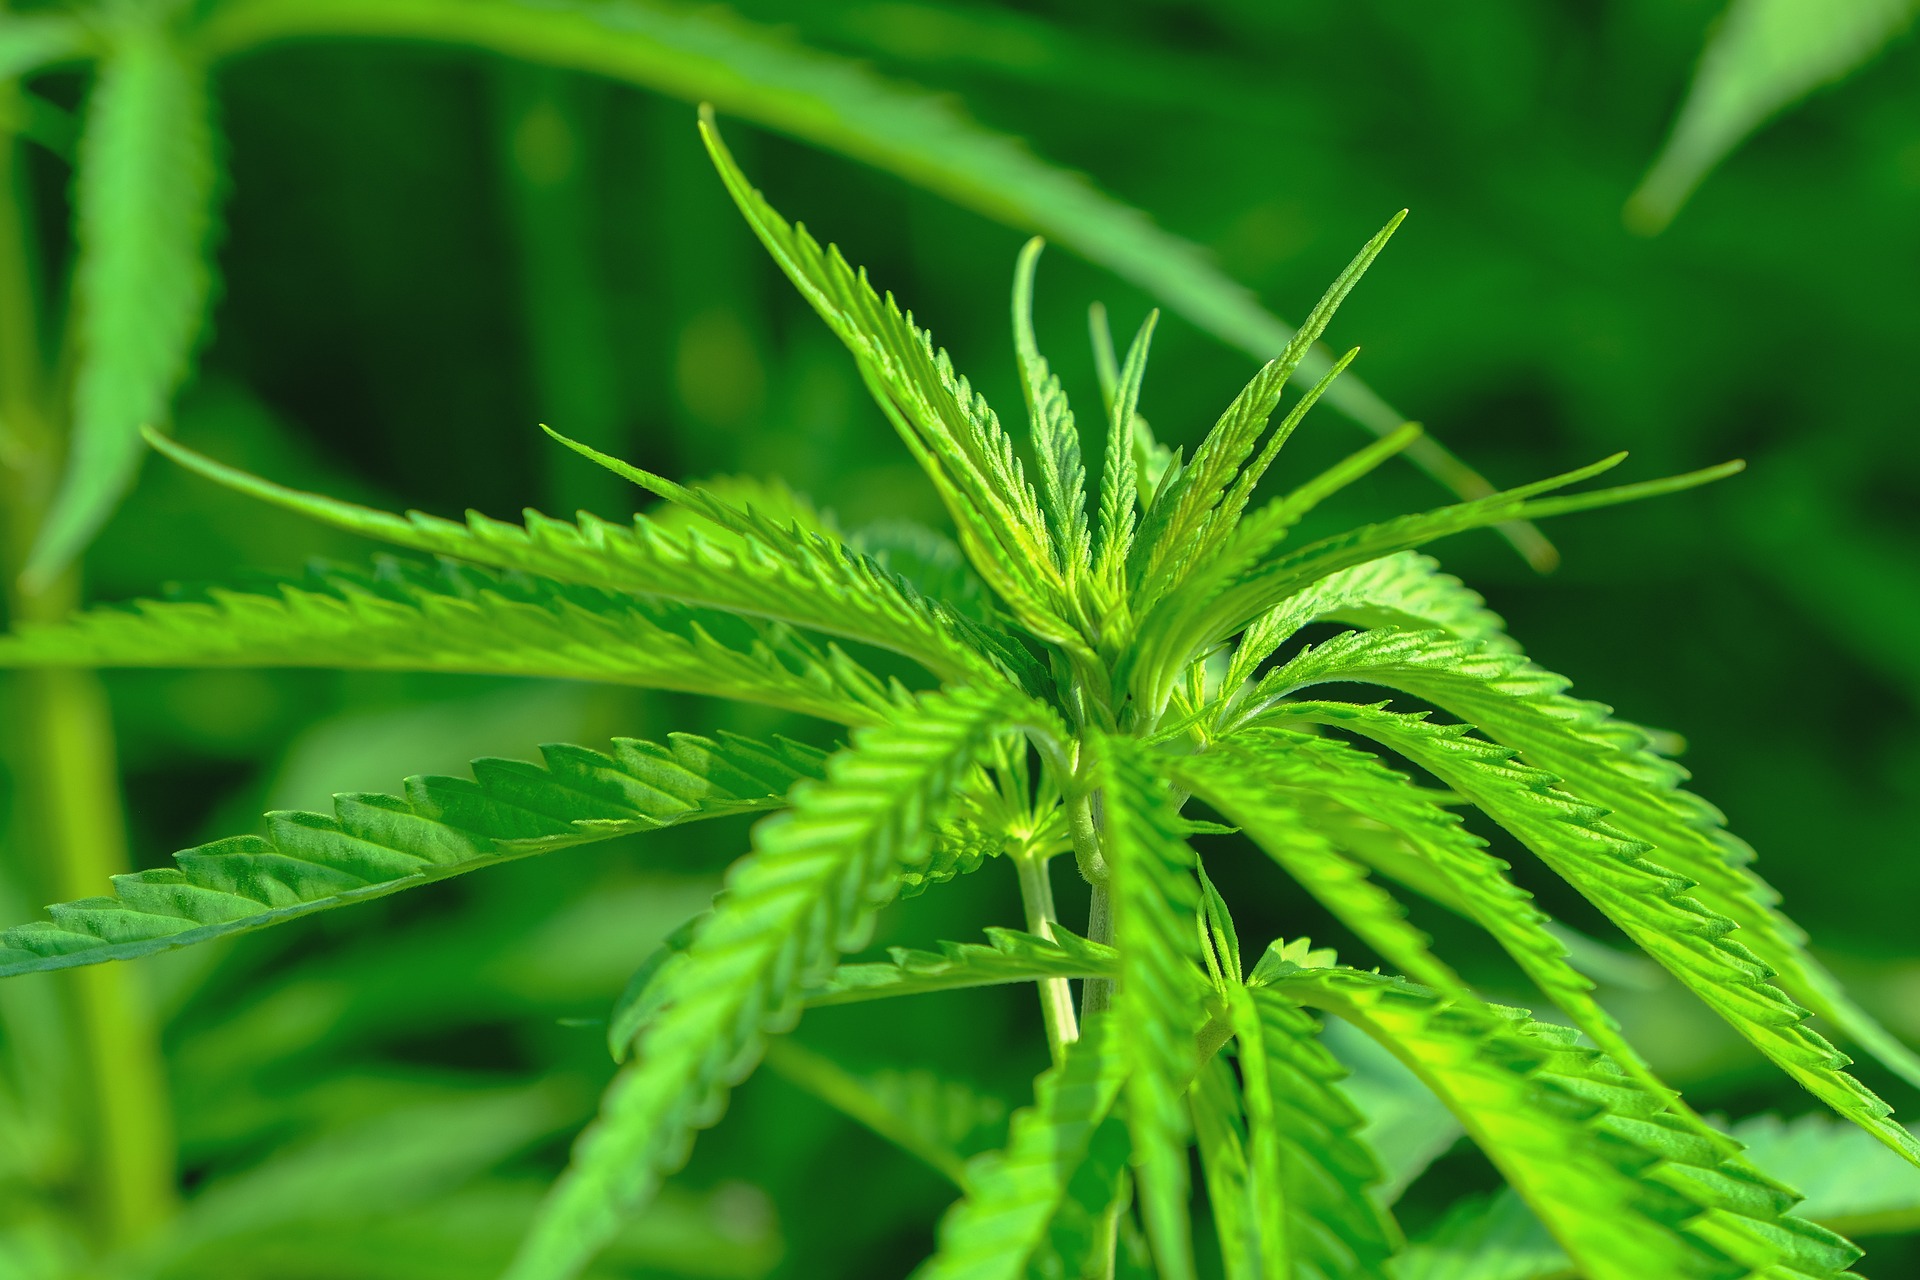 Imagen de archivo de una planta de cannabis usada, entre otras cosas, para realizar productos farmacéuticos o cosméticos. Pixabay